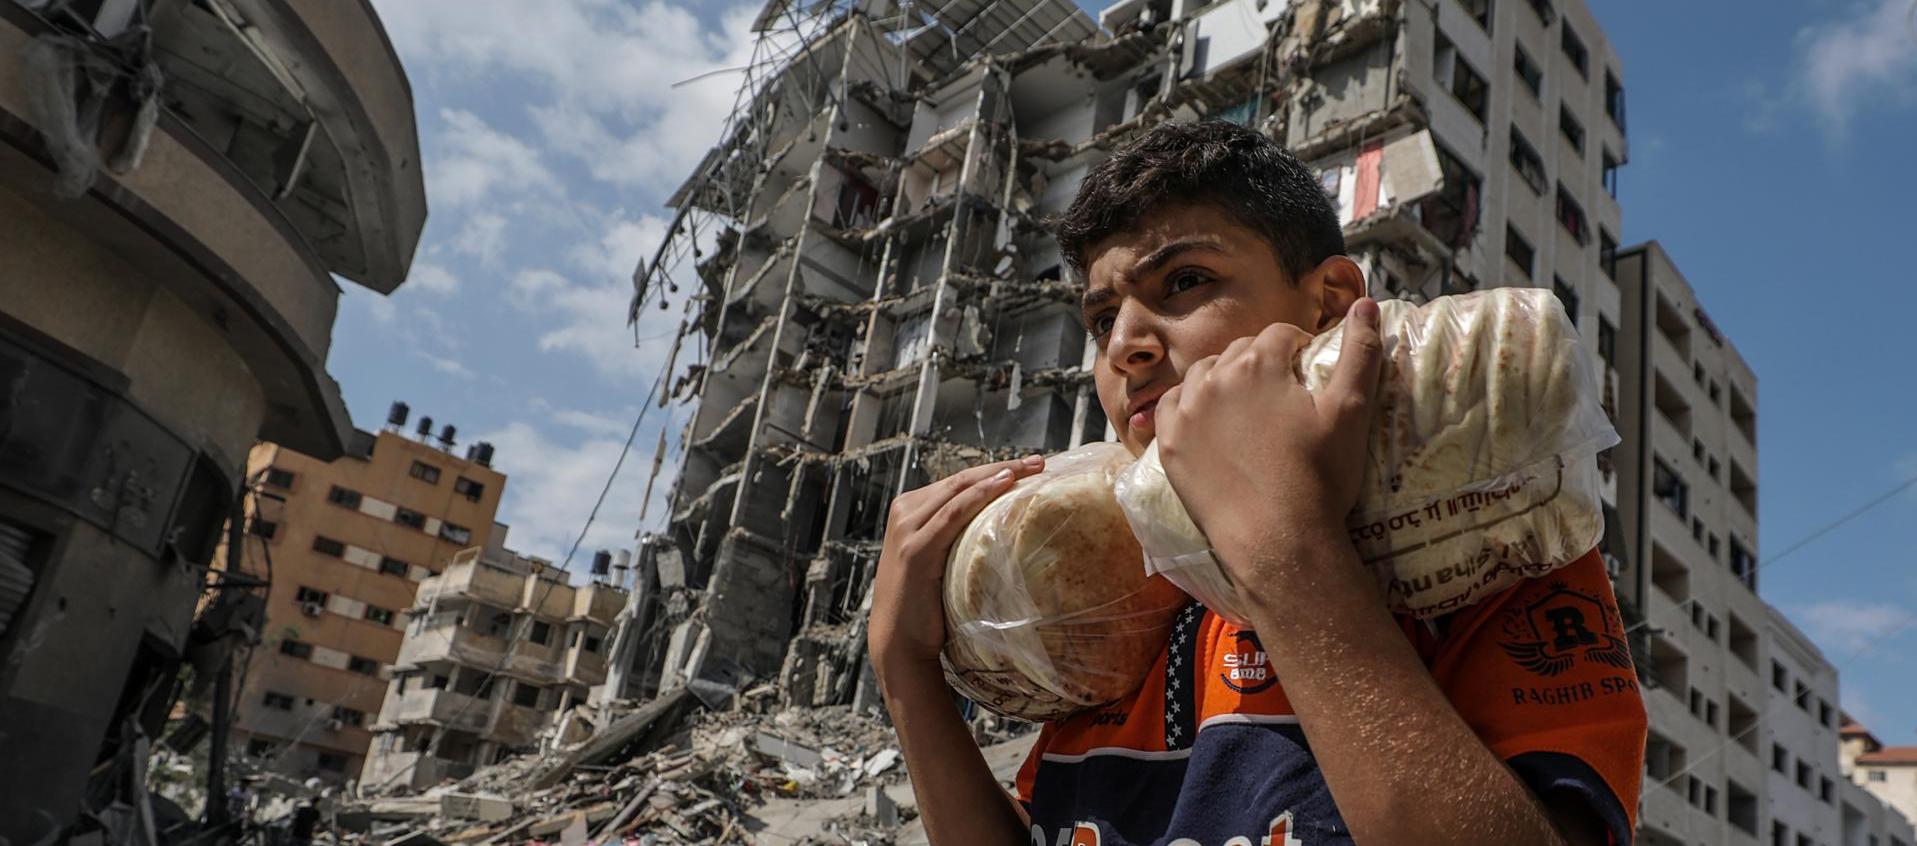 Un palestino lleva pan y al fondo se ven edificios destruidos en la ciudad de Gaza.